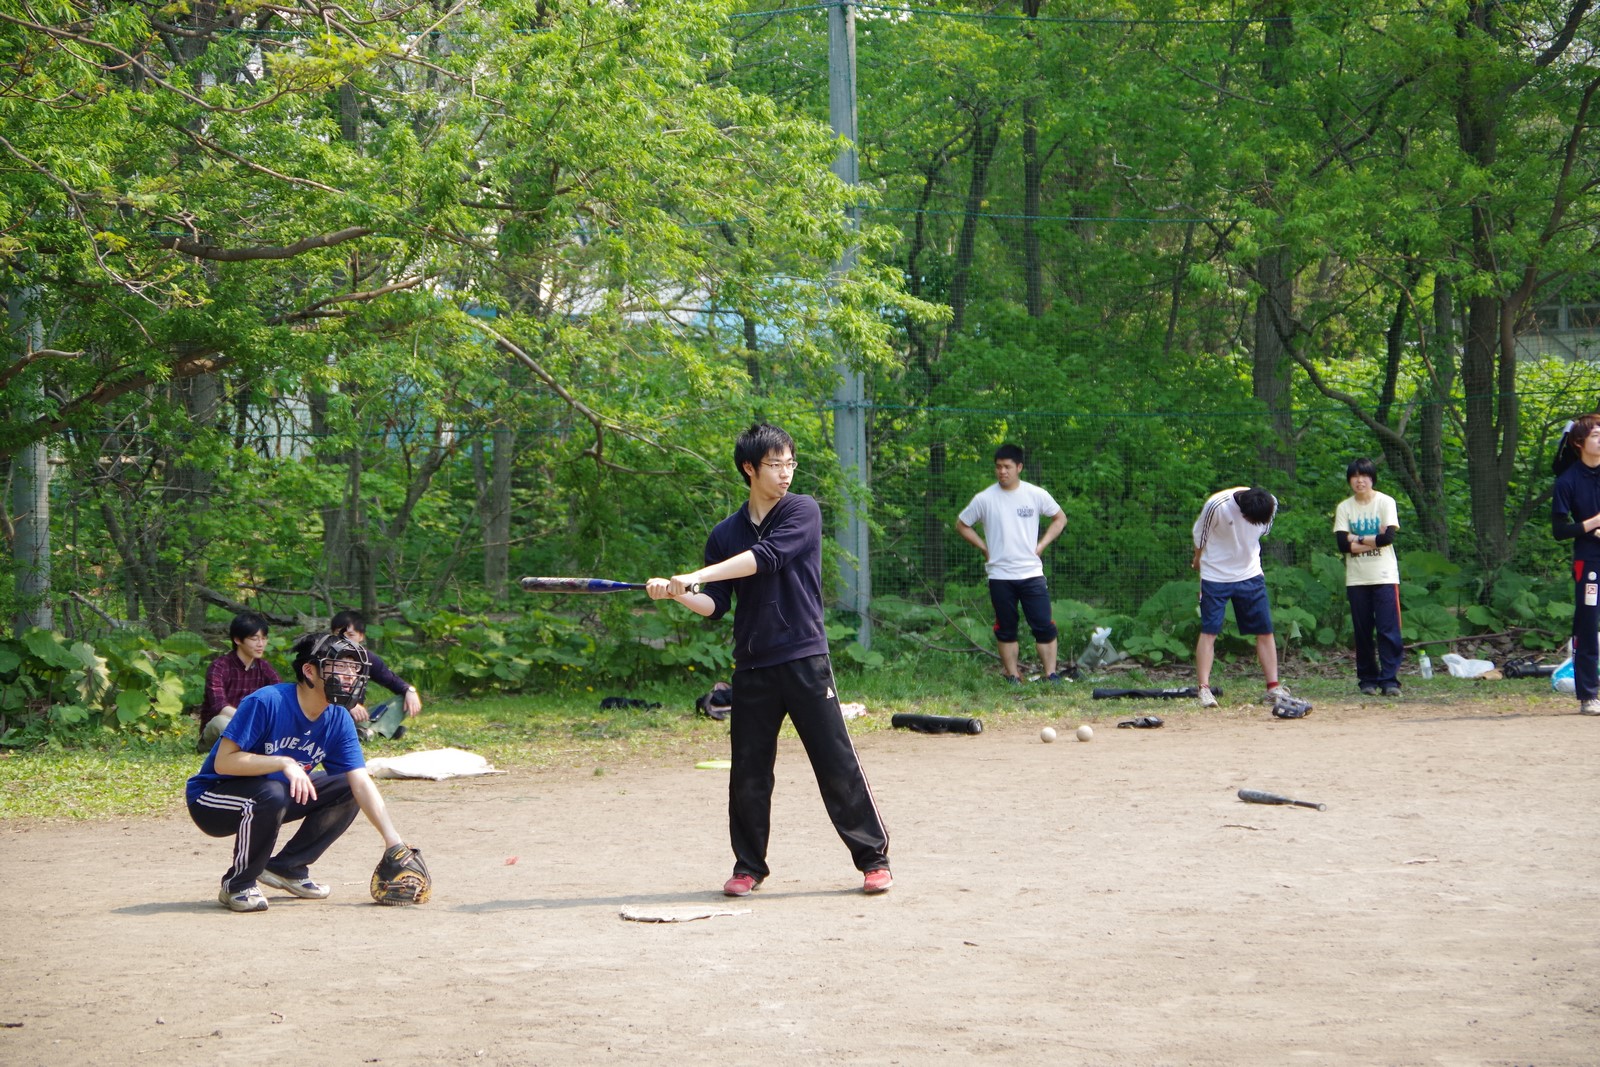 Softball Game